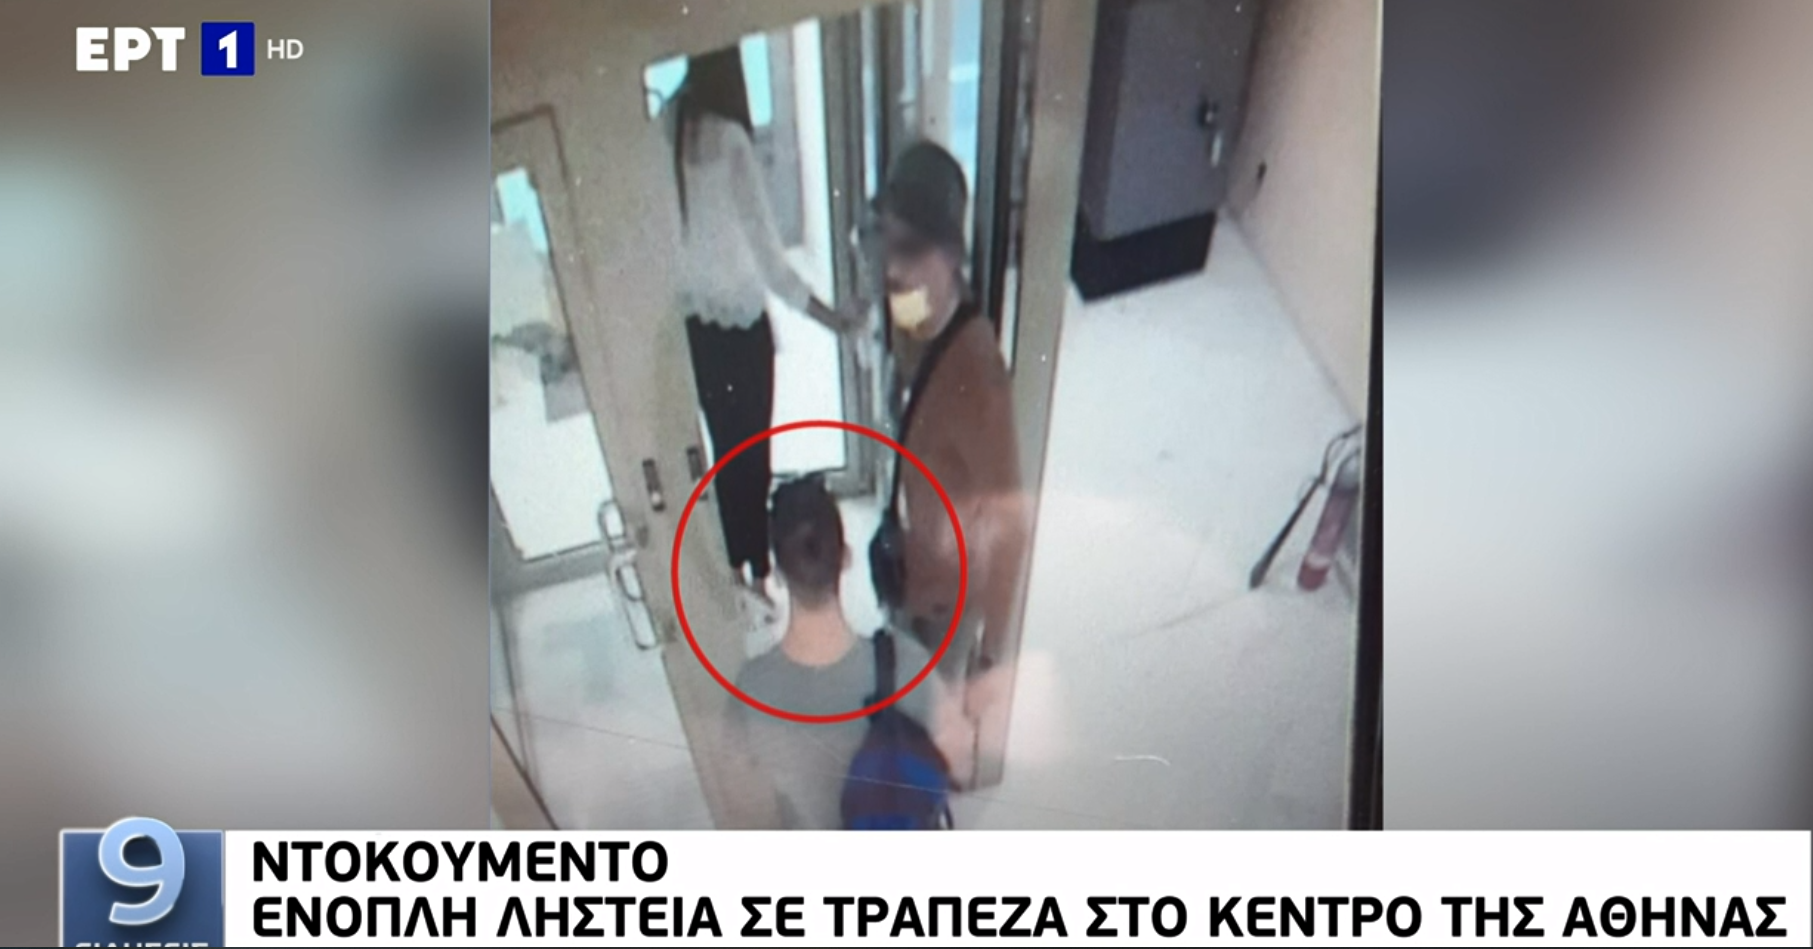 Ένοπλη ληστεία σε τράπεζα στην οδό Μητροπόλεως – Φωτογραφικό ντοκουμέντο (video)